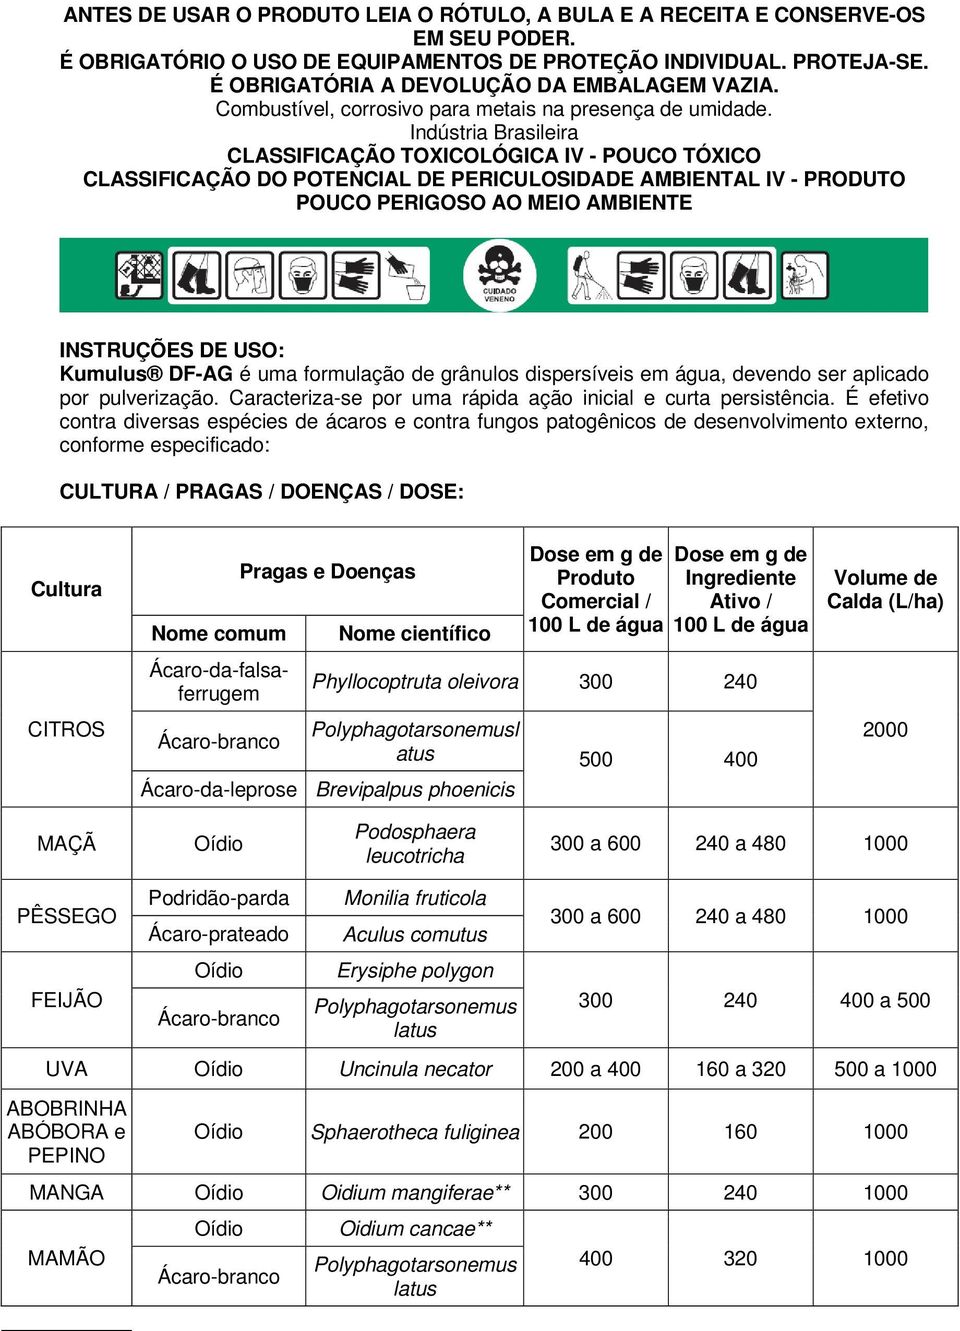 Indústria Brasileira CLASSIFICAÇÃO TOXICOLÓGICA IV - POUCO TÓXICO CLASSIFICAÇÃO DO POTENCIAL DE PERICULOSIDADE AMBIENTAL IV - PRODUTO POUCO PERIGOSO AO MEIO AMBIENTE INSTRUÇÕES DE USO: Kumulus DF-AG